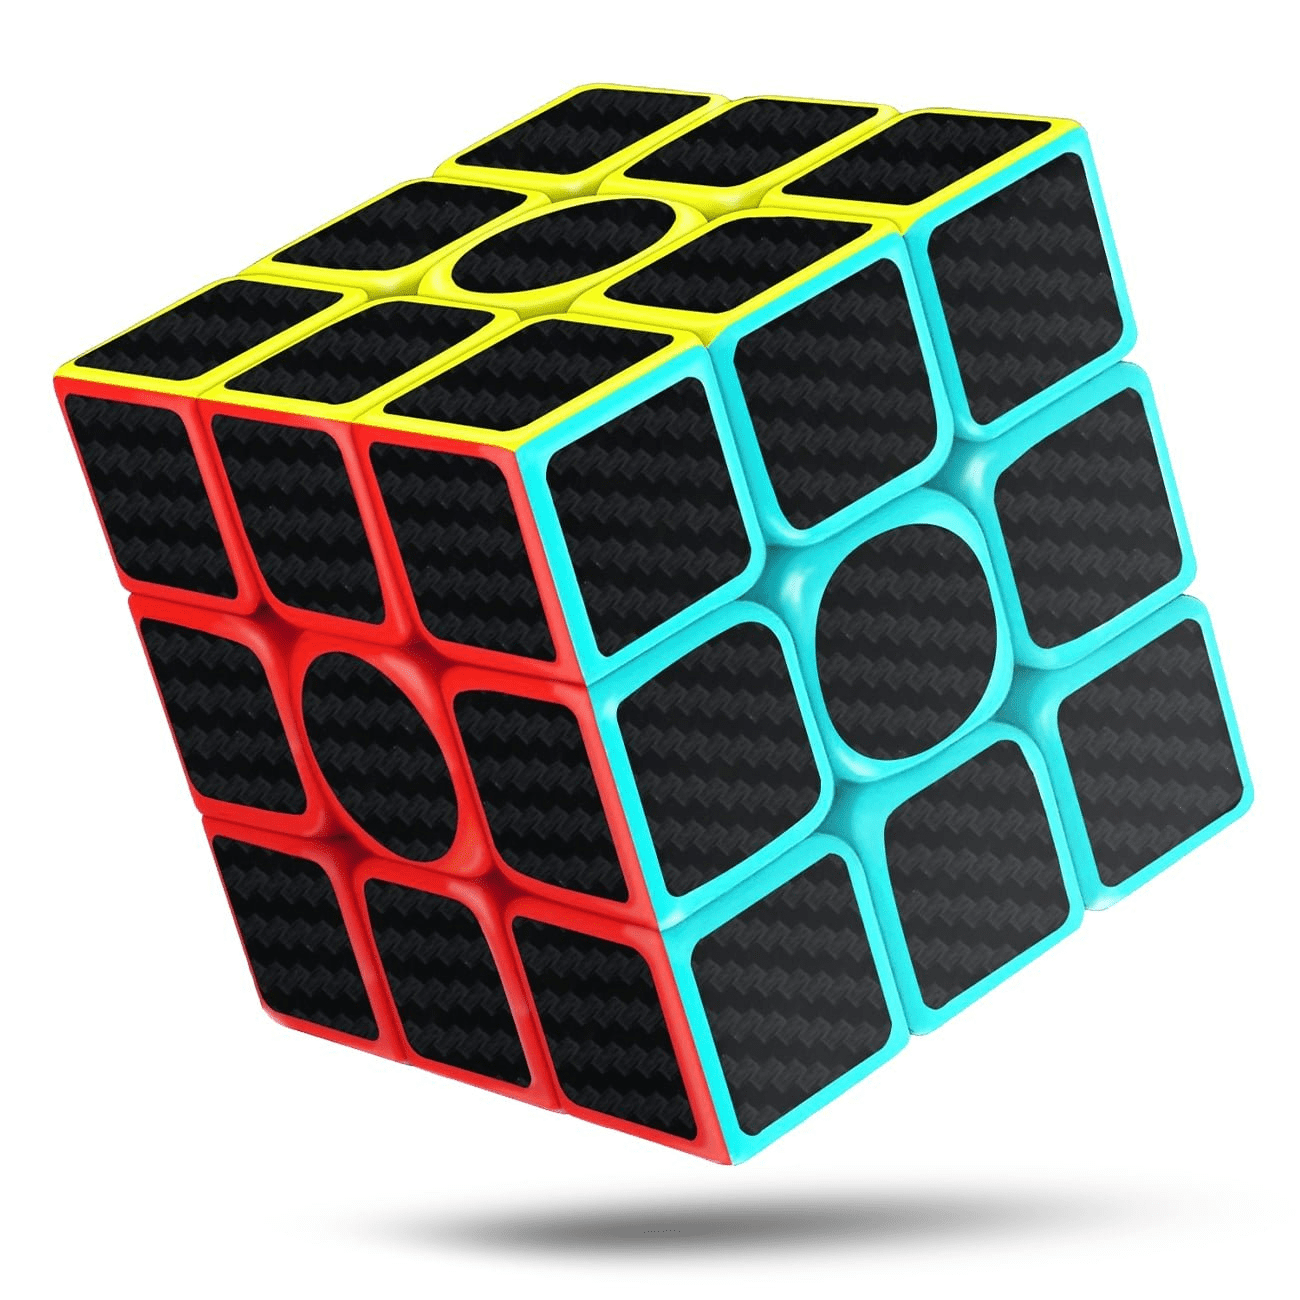 Rubik's Kitten Puzzle Cube Game For Kids Brain Teaser-Used 